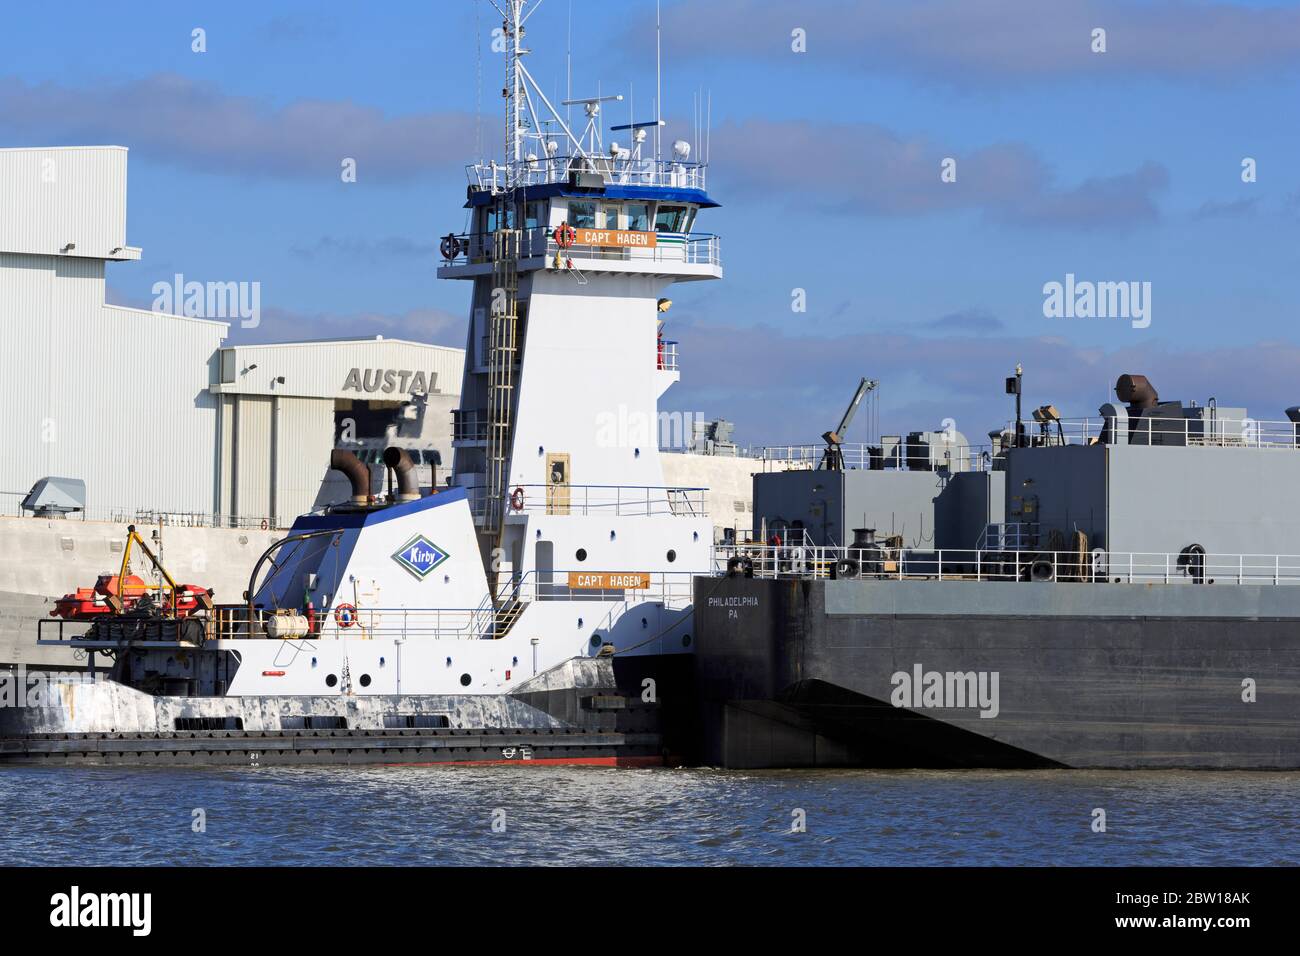 Tug & barge, Mobile, Alabama, USA Stock Photo